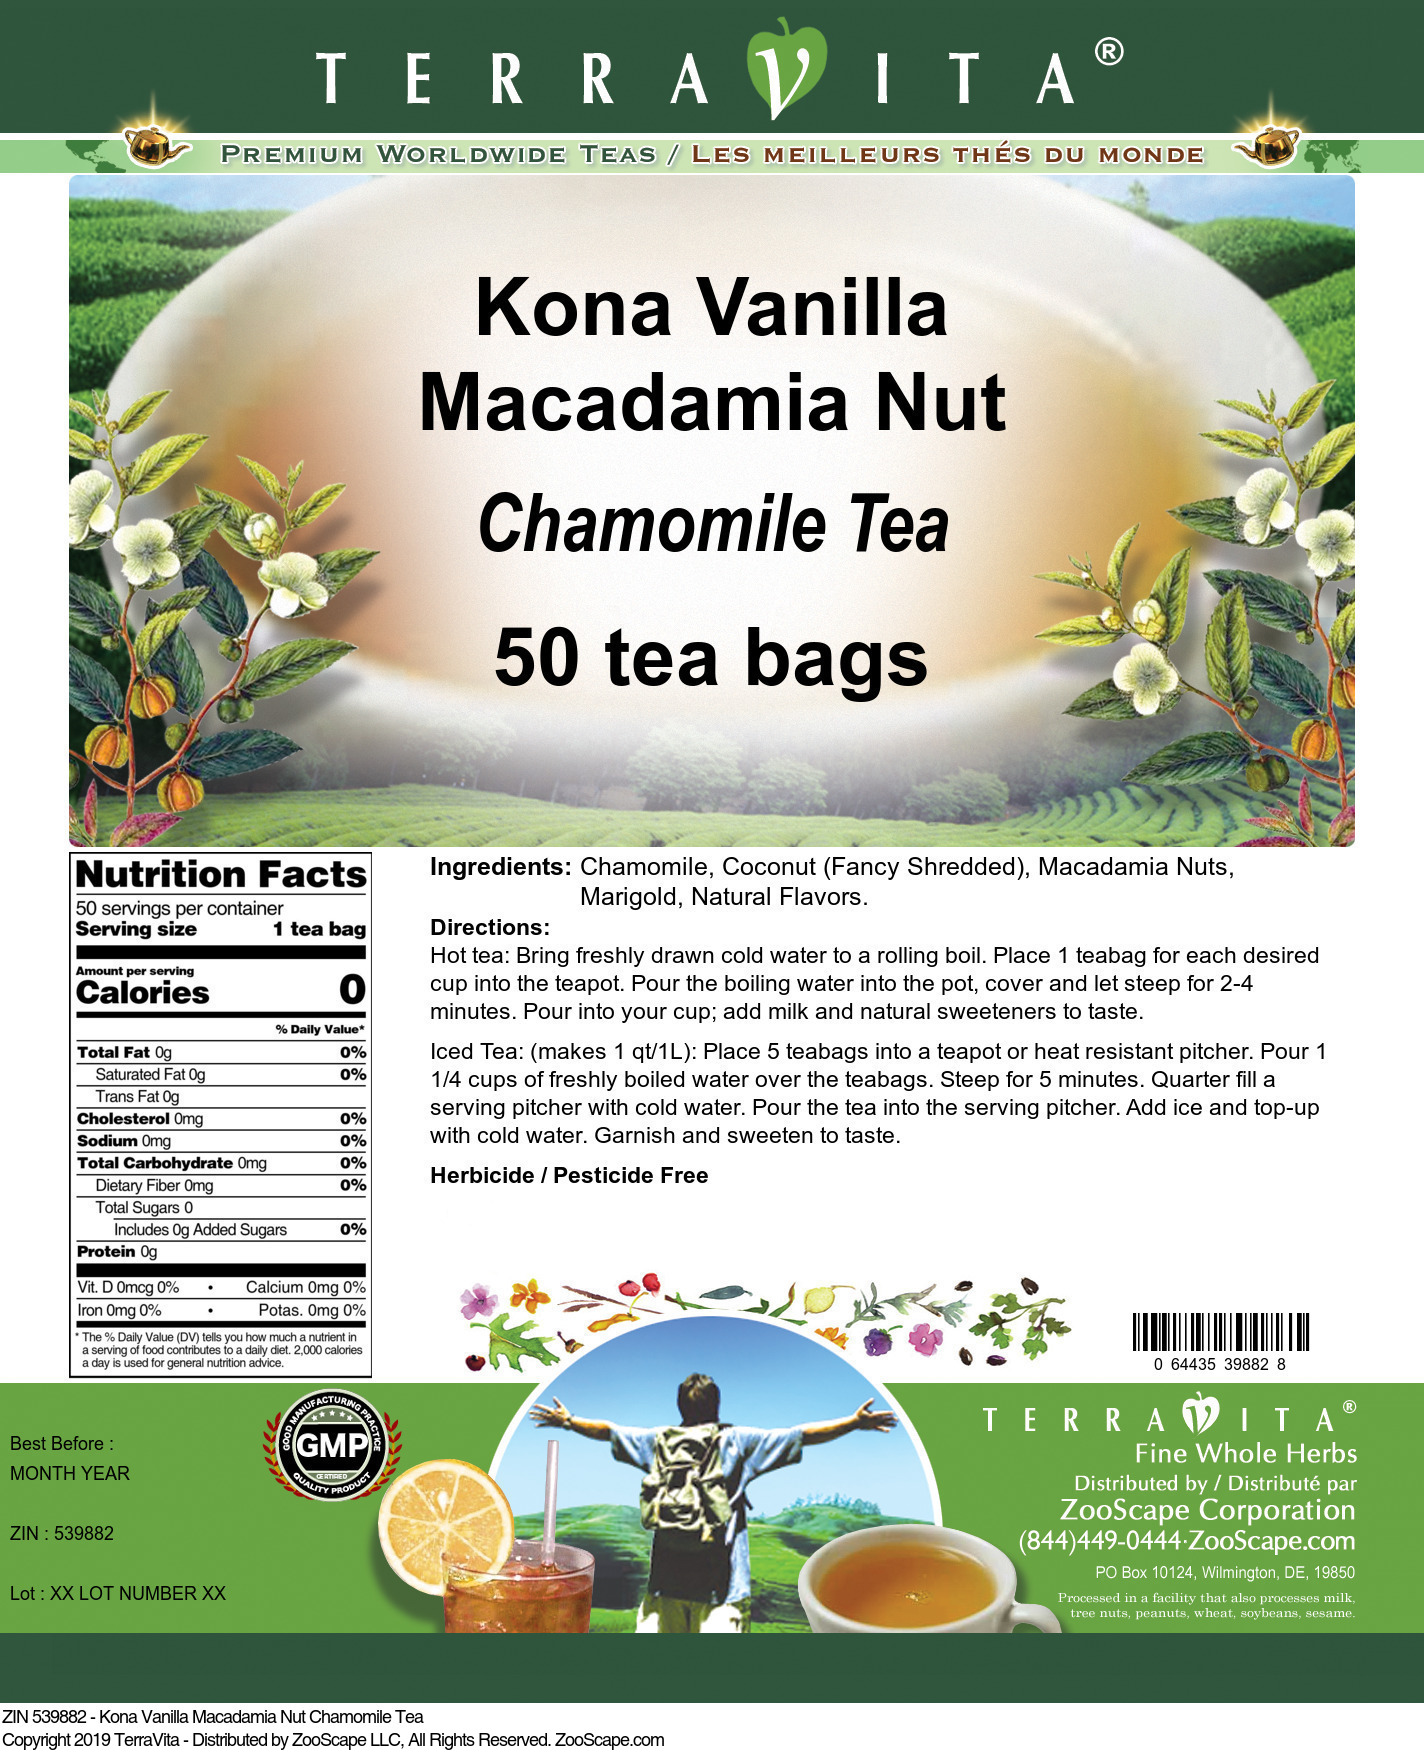 Kona Vanilla Macadamia Nut Chamomile Tea - Label